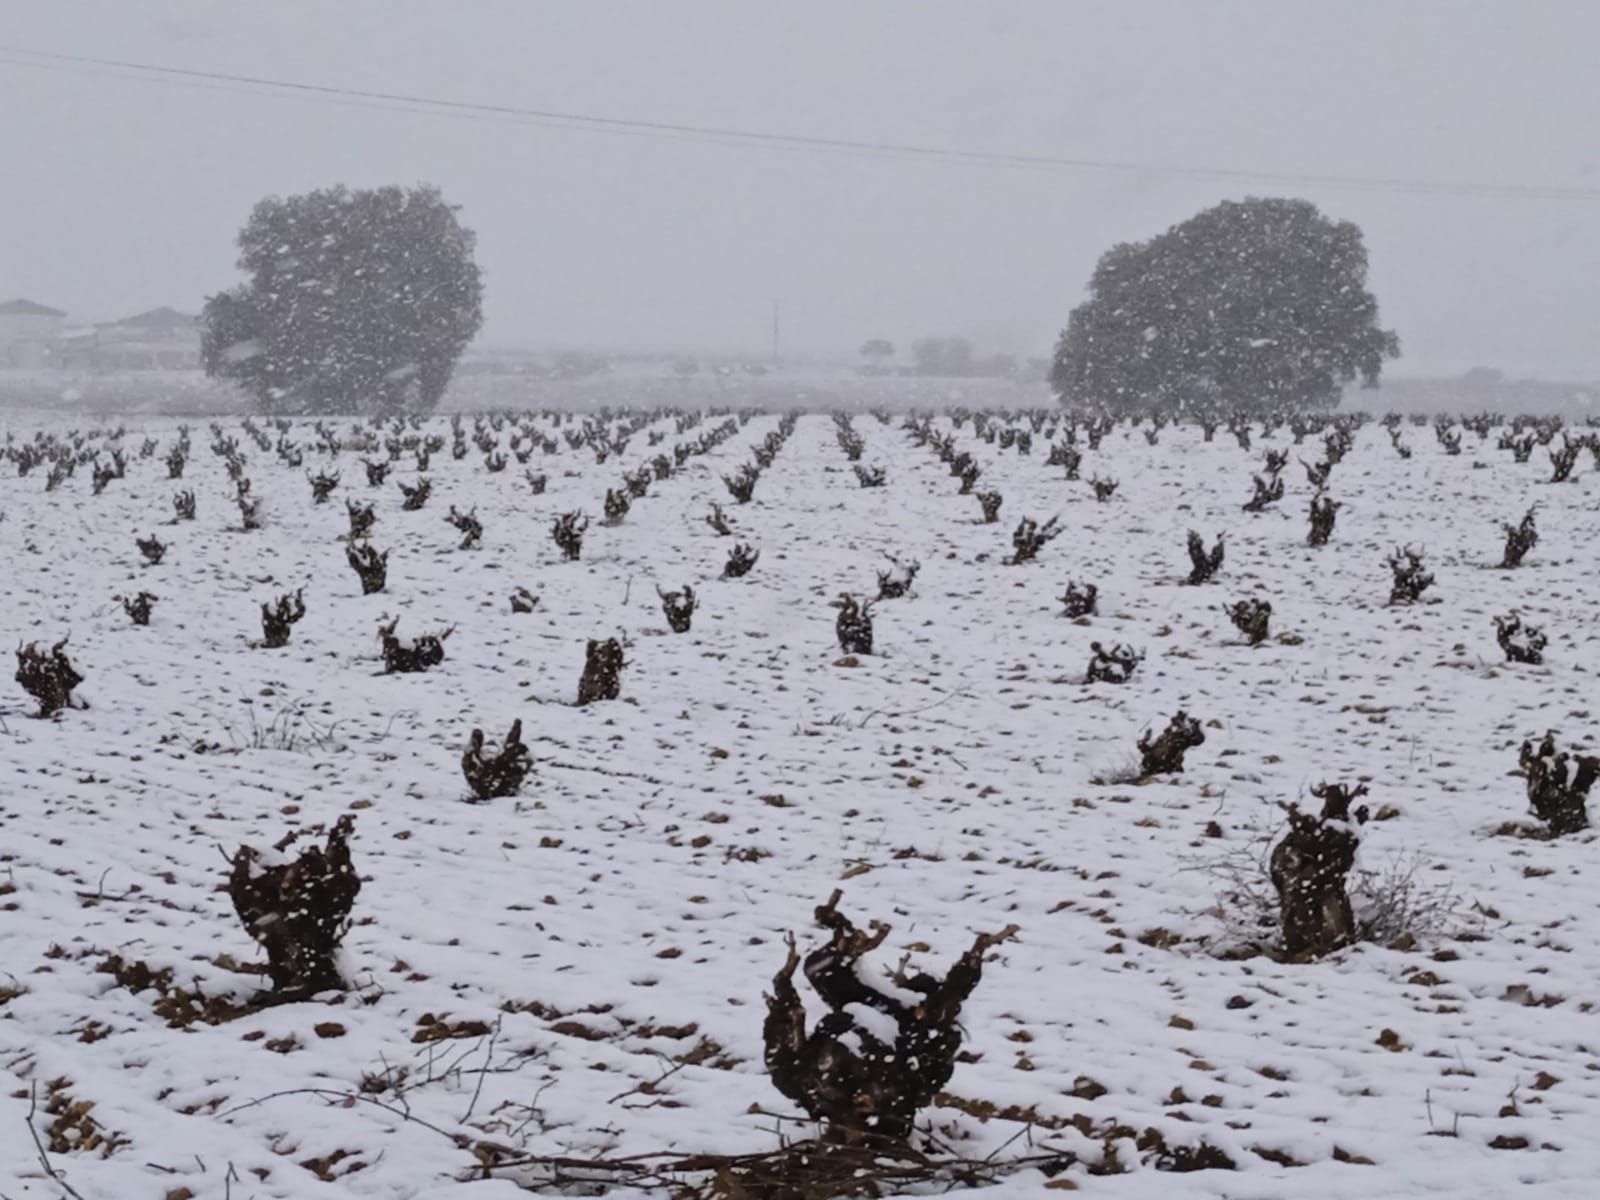 GALERÍA | Nieve sobre la flor del almendro en Zamora